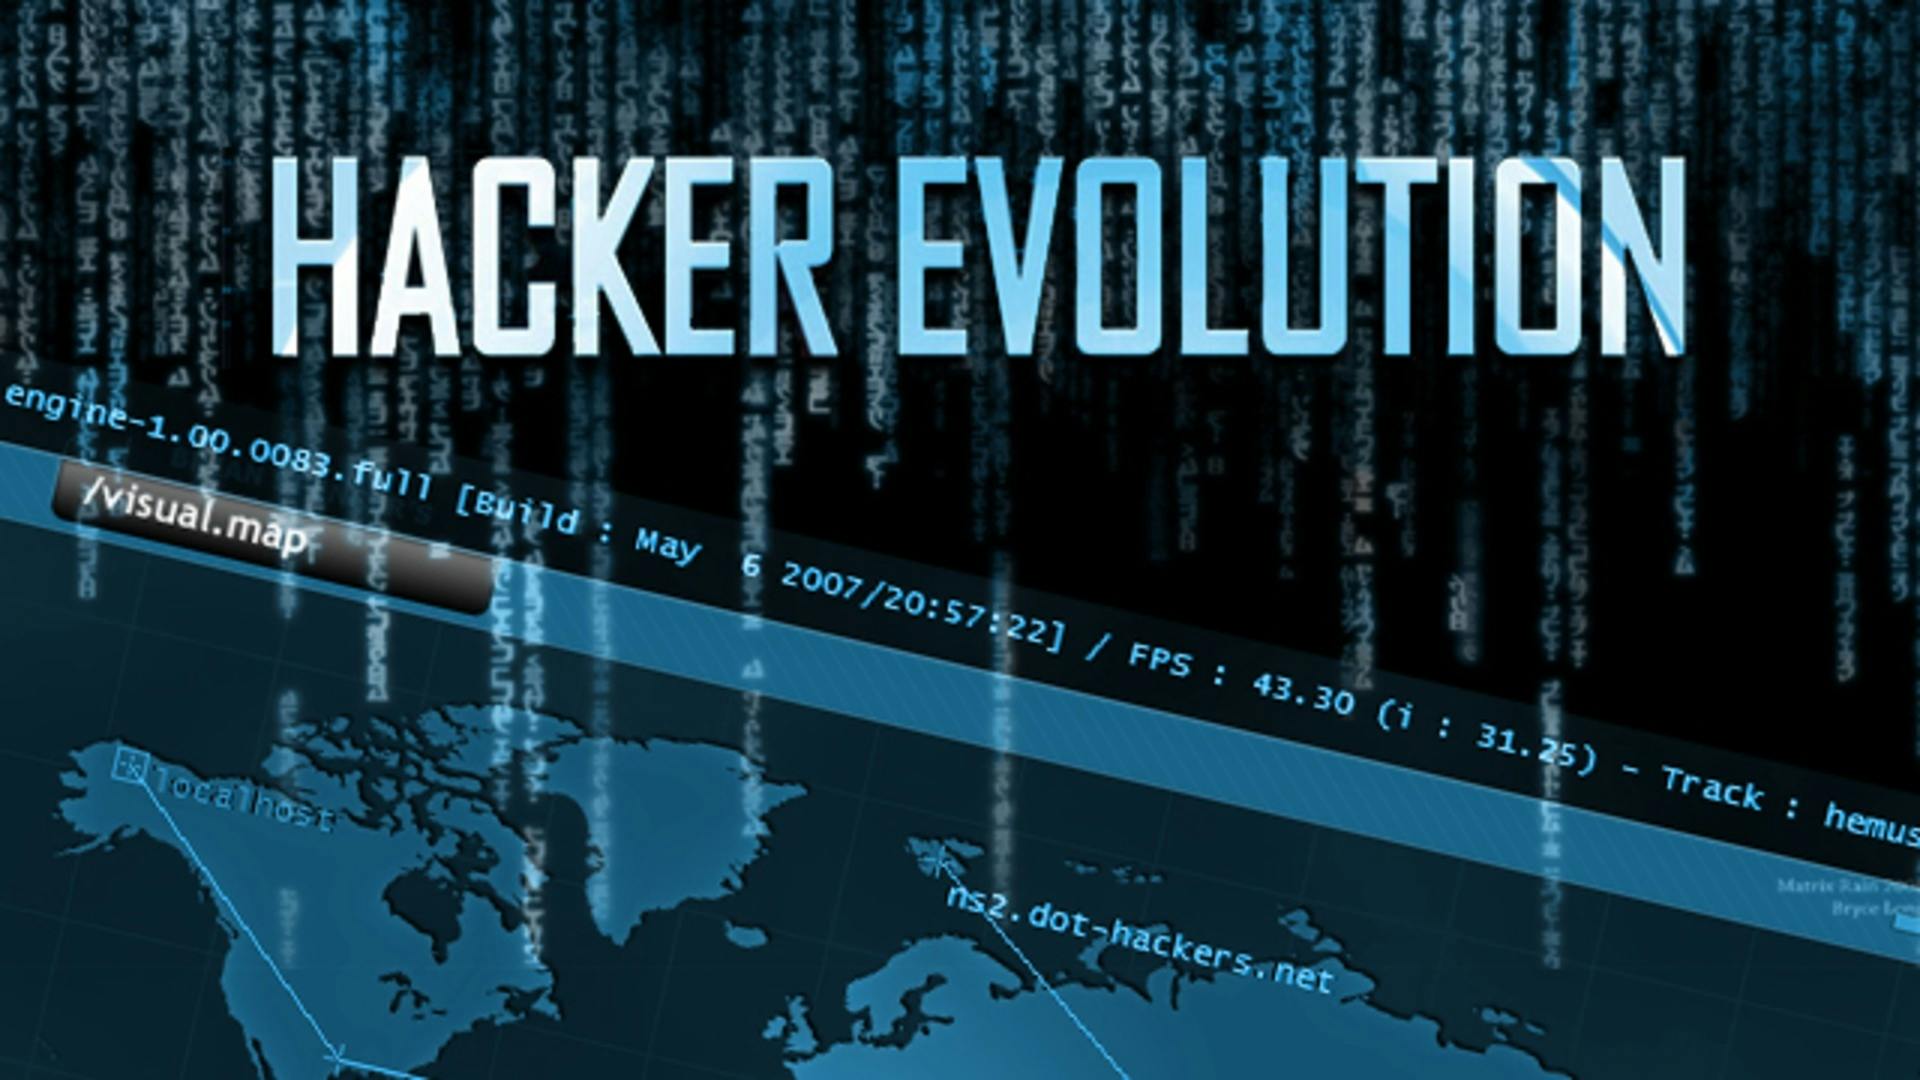 hacker-evolution-steam-pc-game